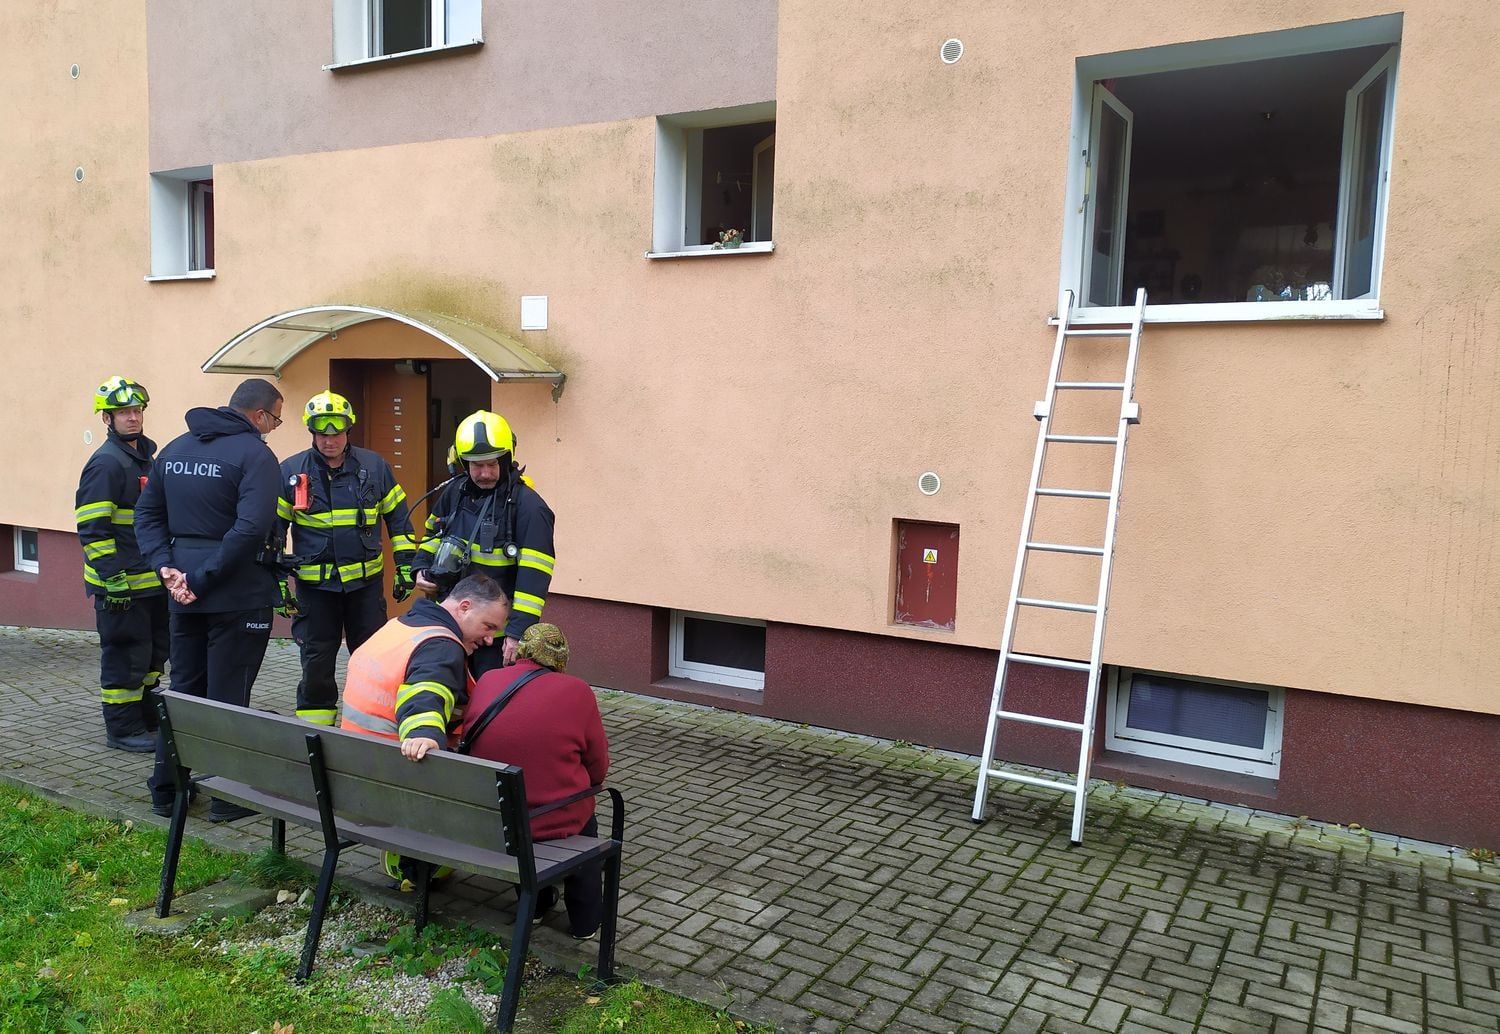 Horní Slavkov: Z bytového domu bylo evakuováno 18 osob